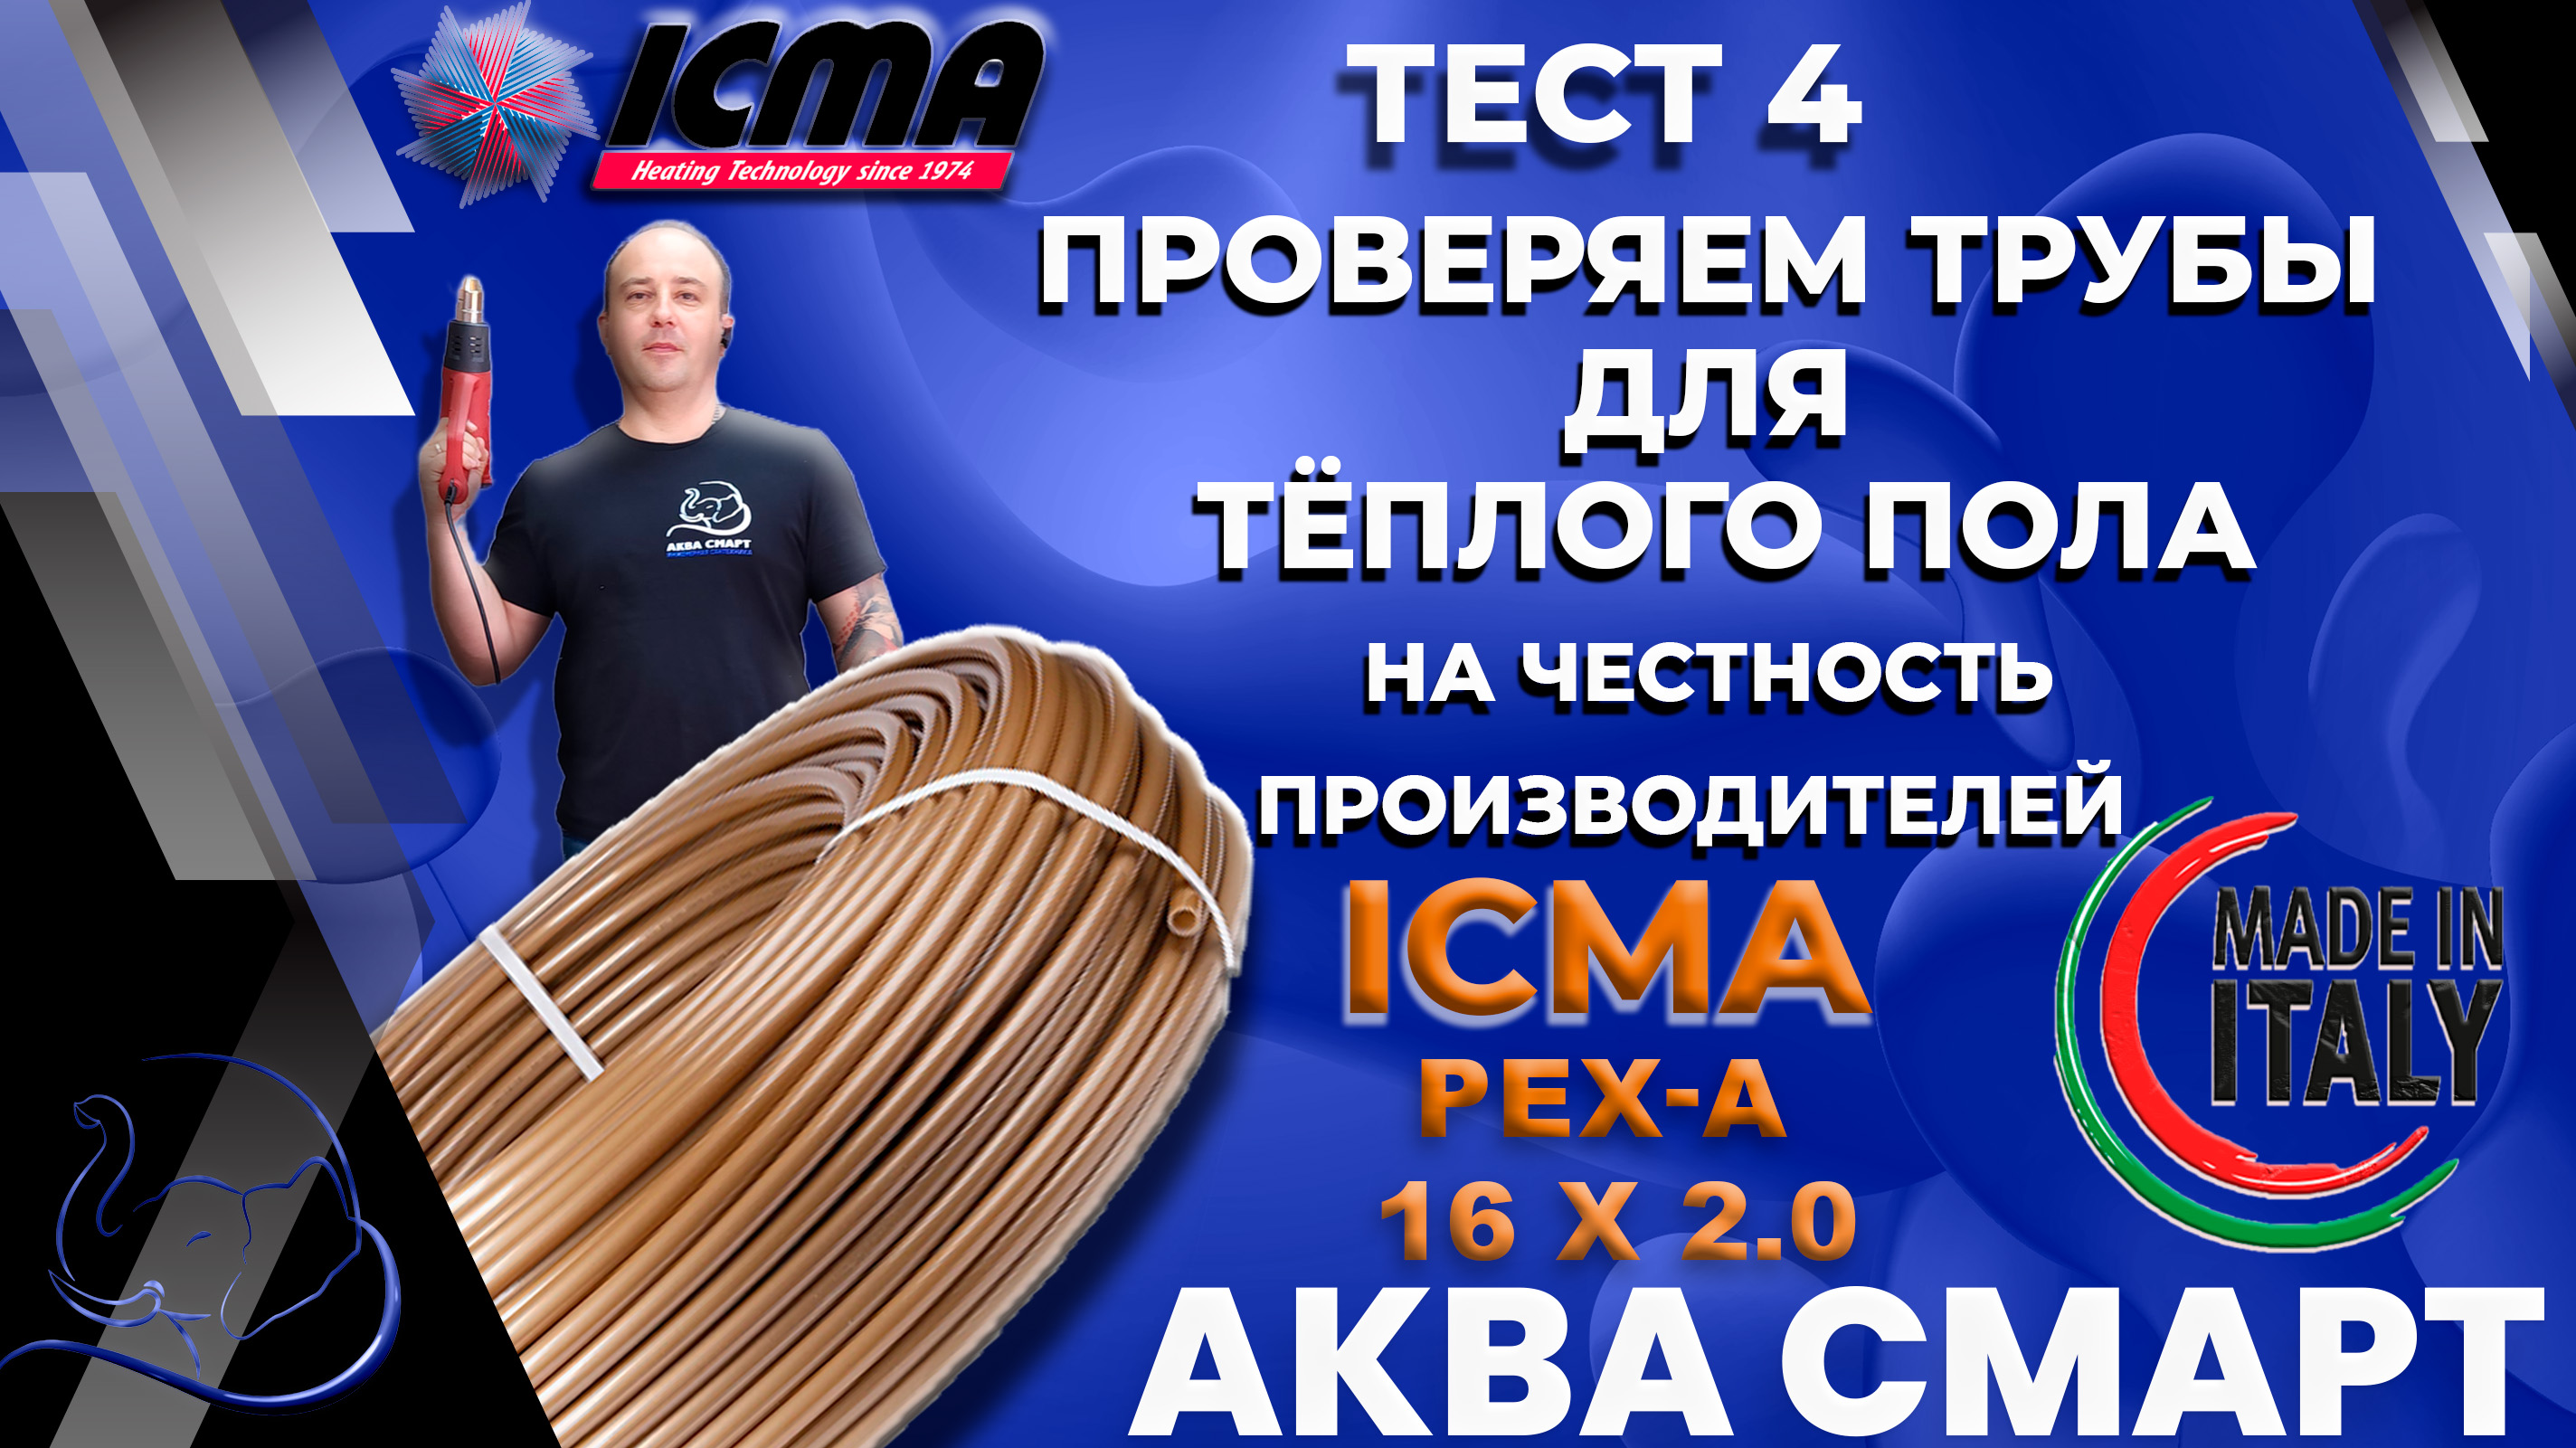 Тест ICMA